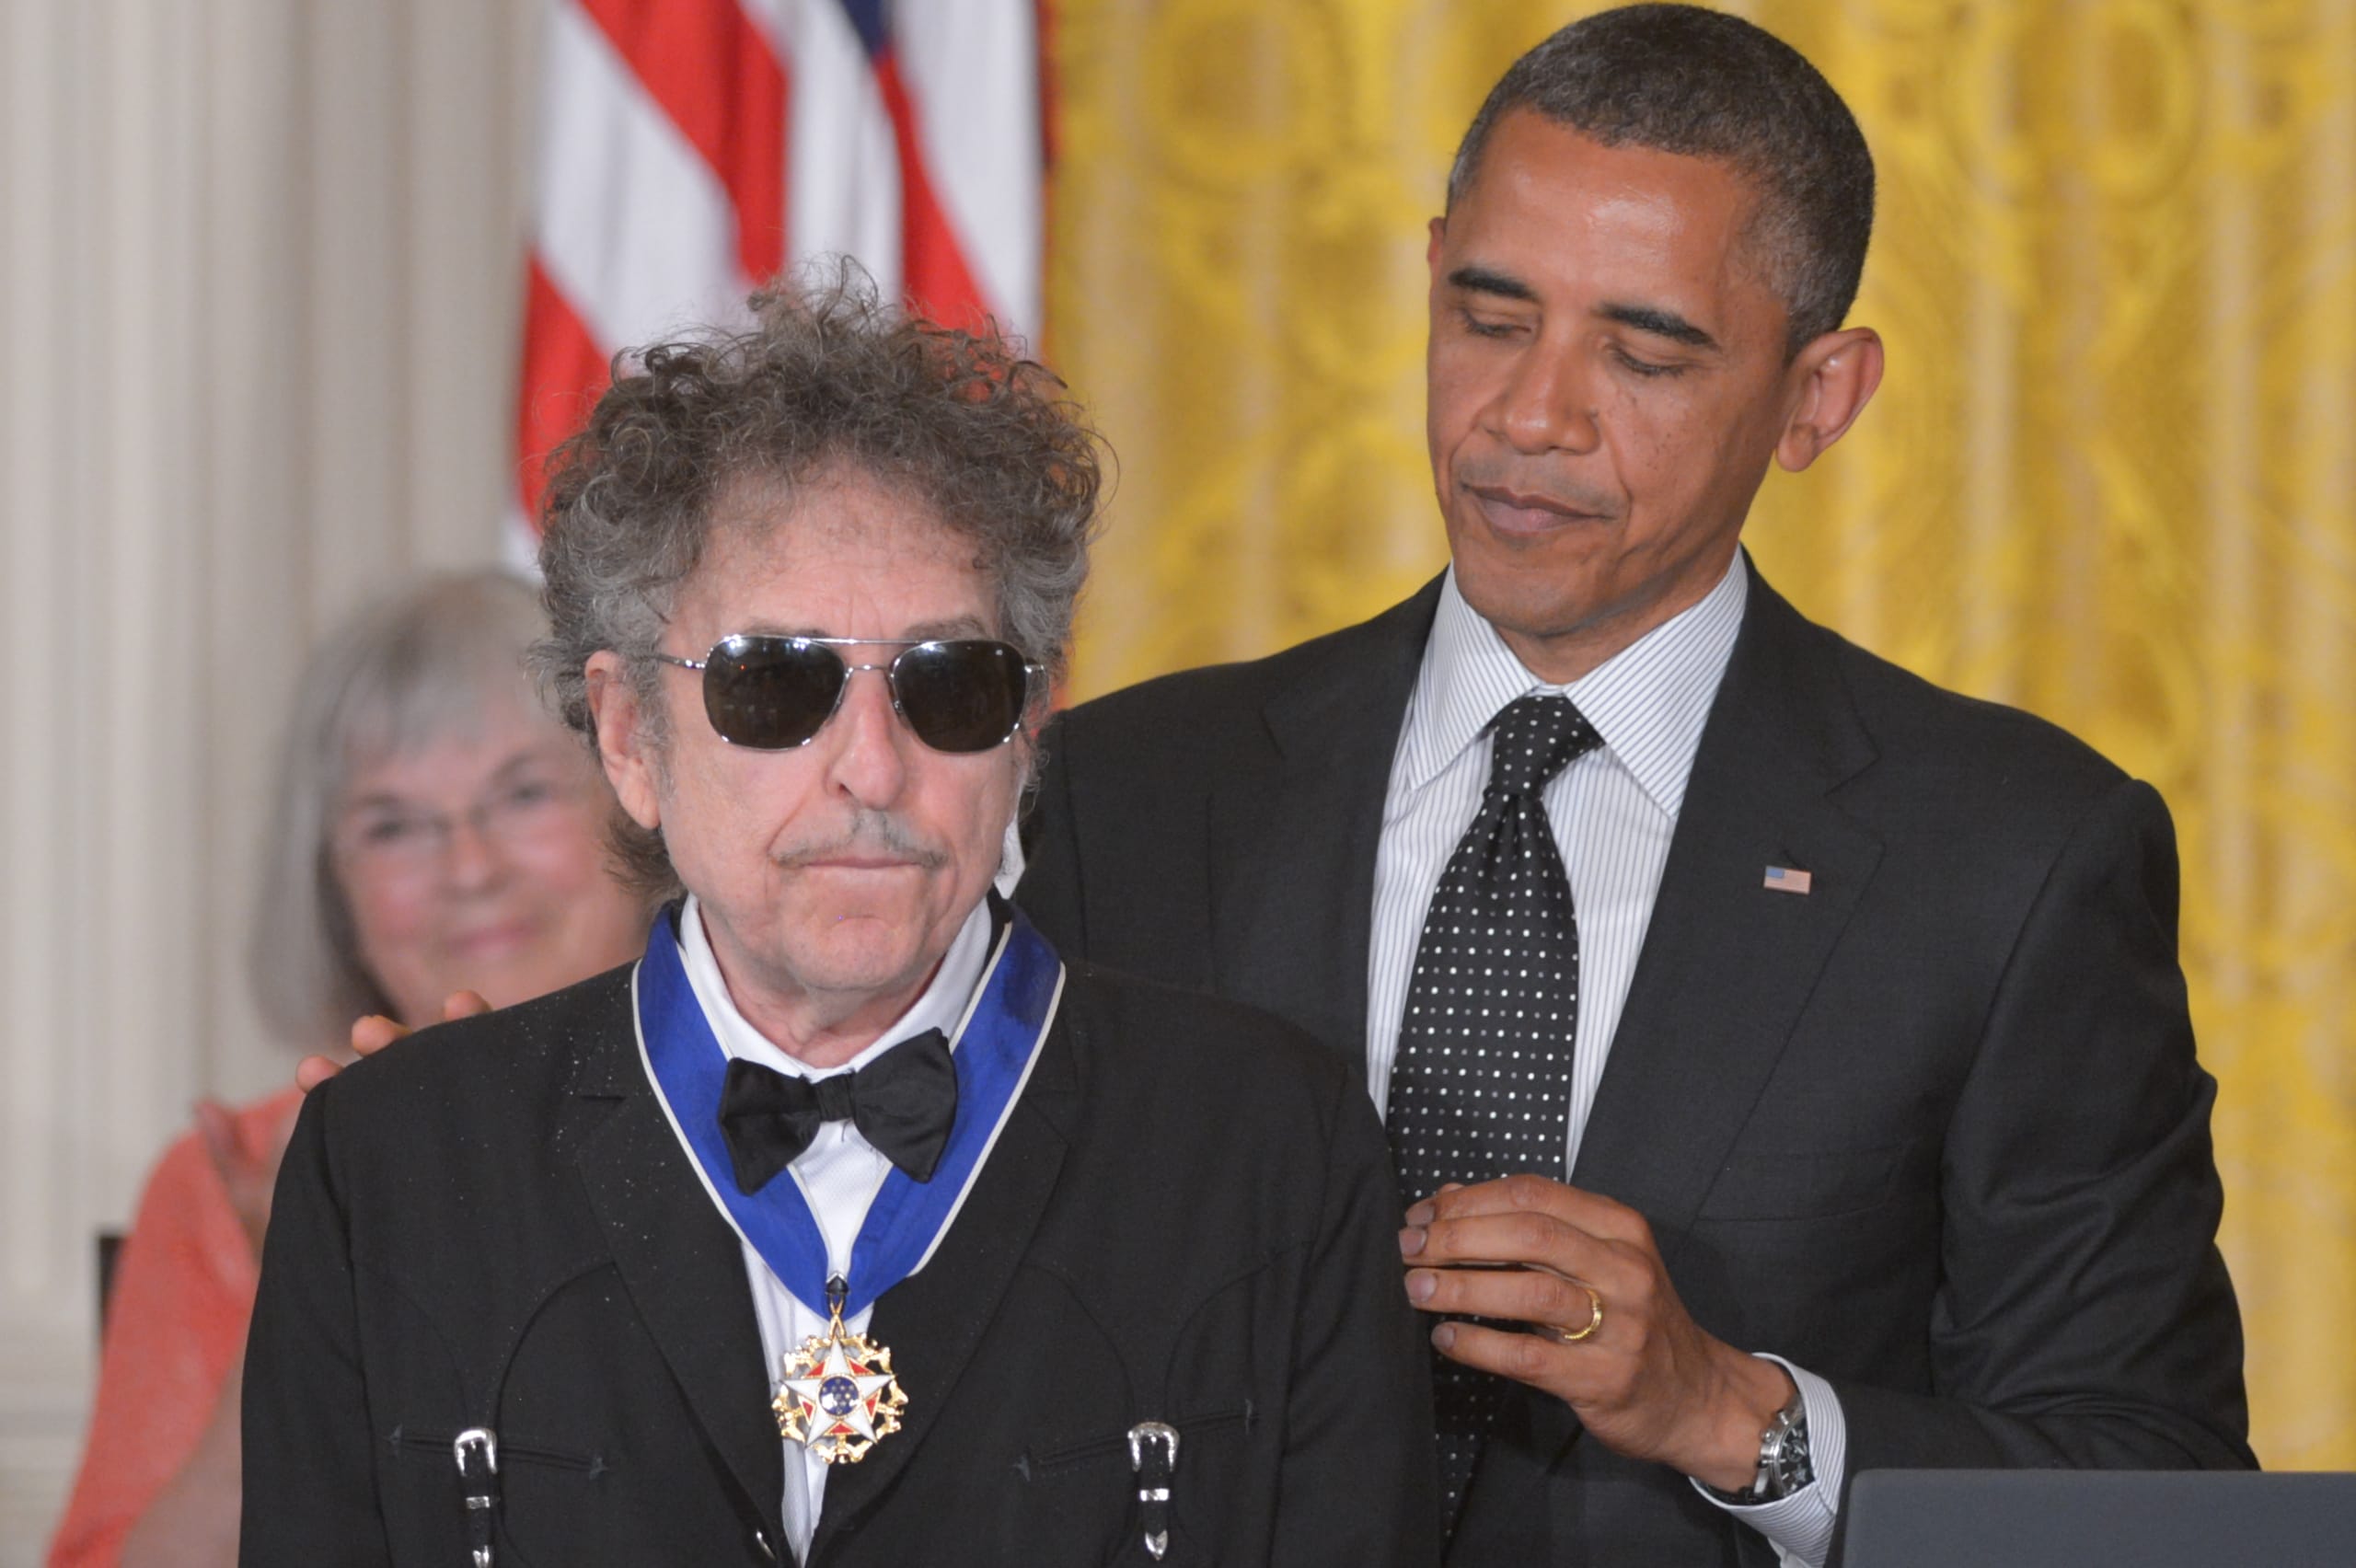 29 maggio 2012. Il presidente Obama insignisce Bob Dylan della medaglia presidenziale della libertà, la più alta onorificenza civile americana, conferita a coloro che hanno dato "un contributo meritorio speciale per la sicurezza o per gli interessi nazionali degli Stati Uniti, per la pace nel mondo, per la cultura o per altra significativa iniziativa pubblica o privata"